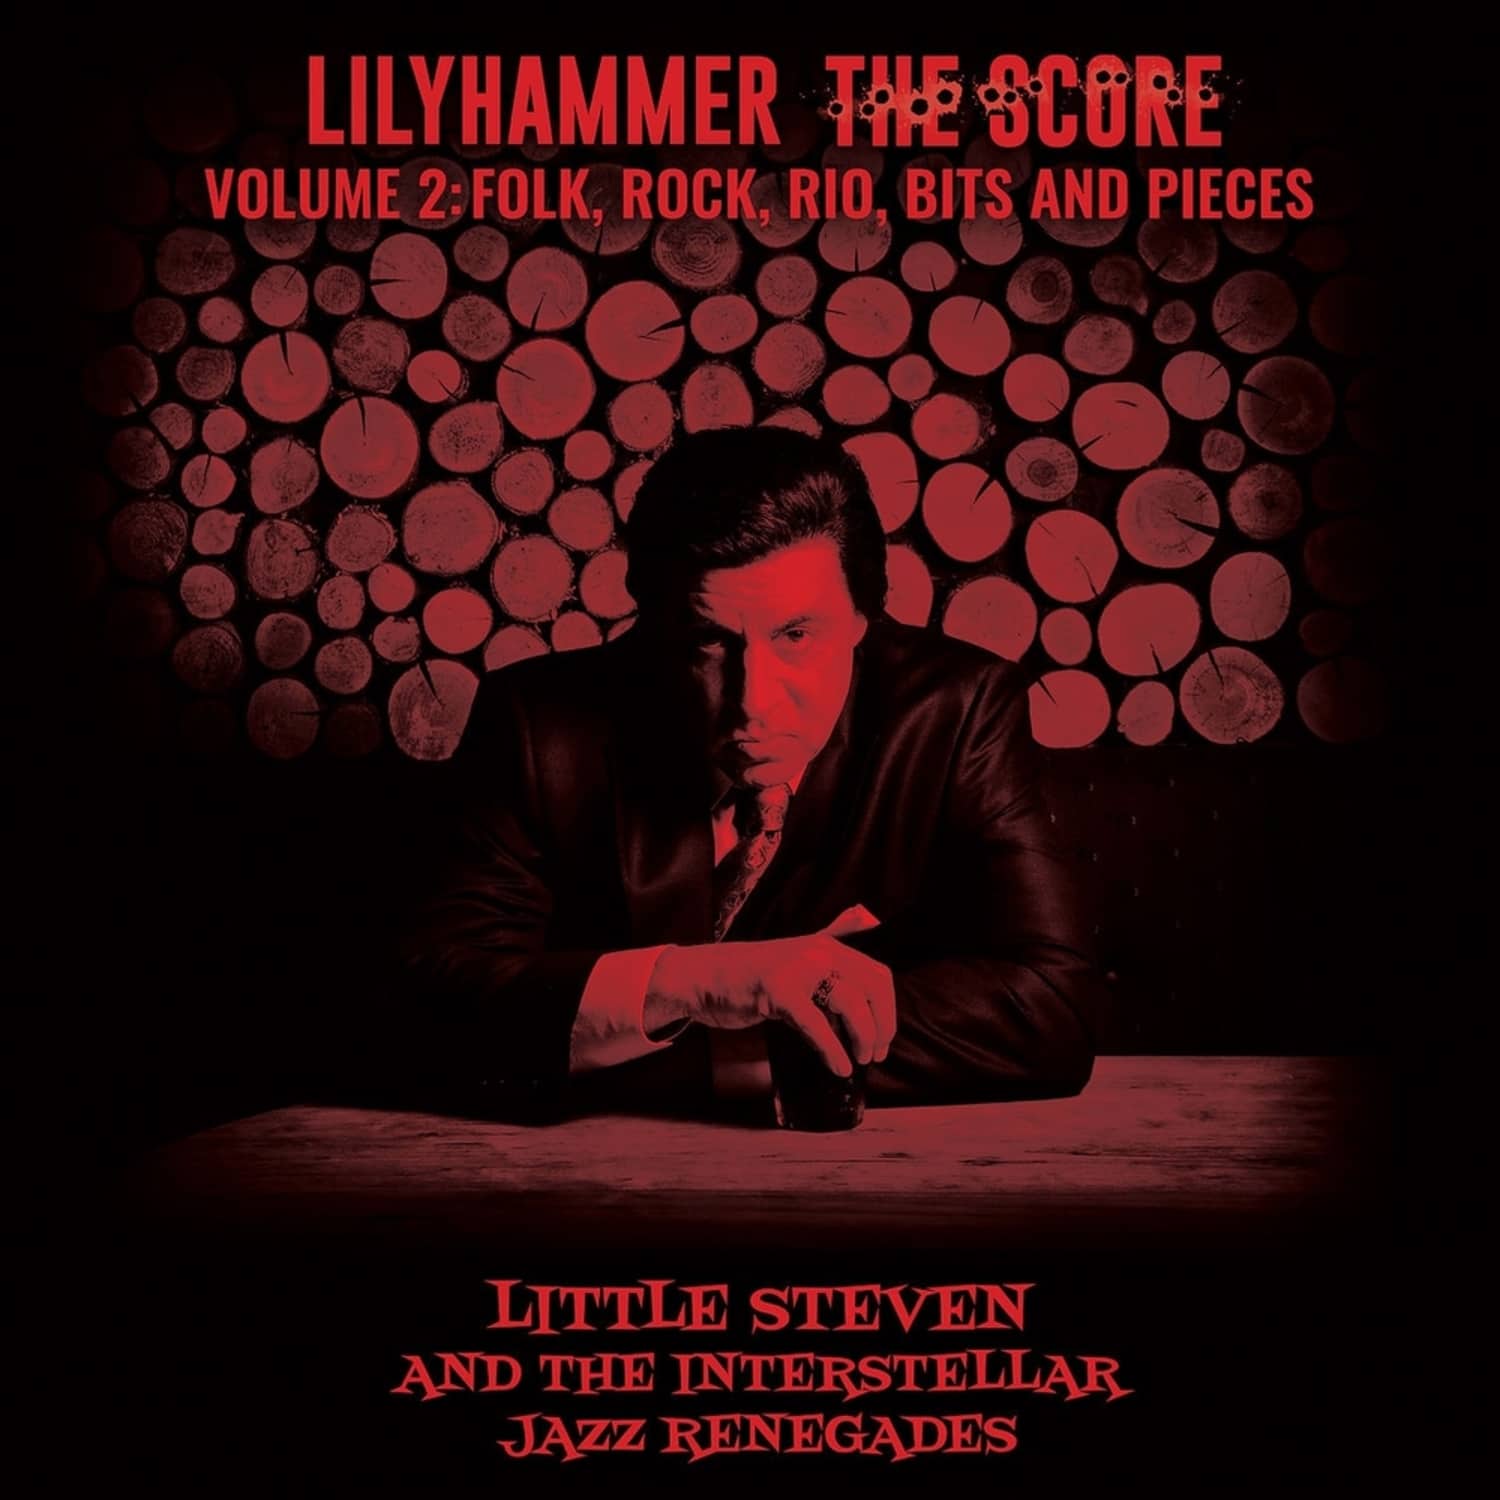 Little Steven & The Interstellar Jazz Renegades - LILYHAMMER THE SCORE VOL.2 